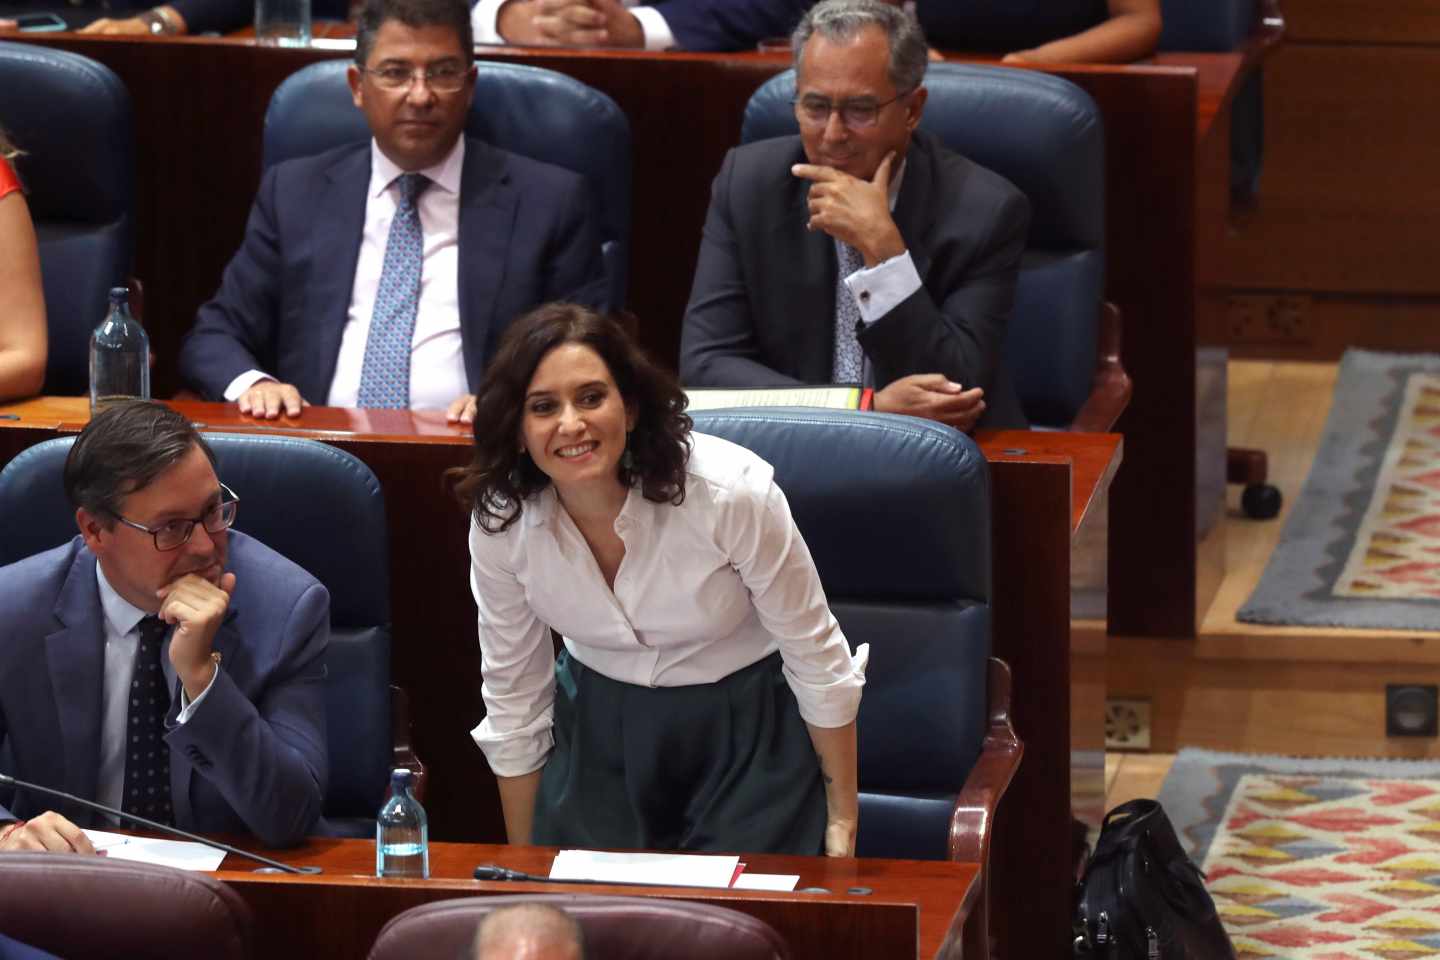 La recién elegida nueva presidenta de la Comunidad de Madrid, Isabel Díaz Ayuso.